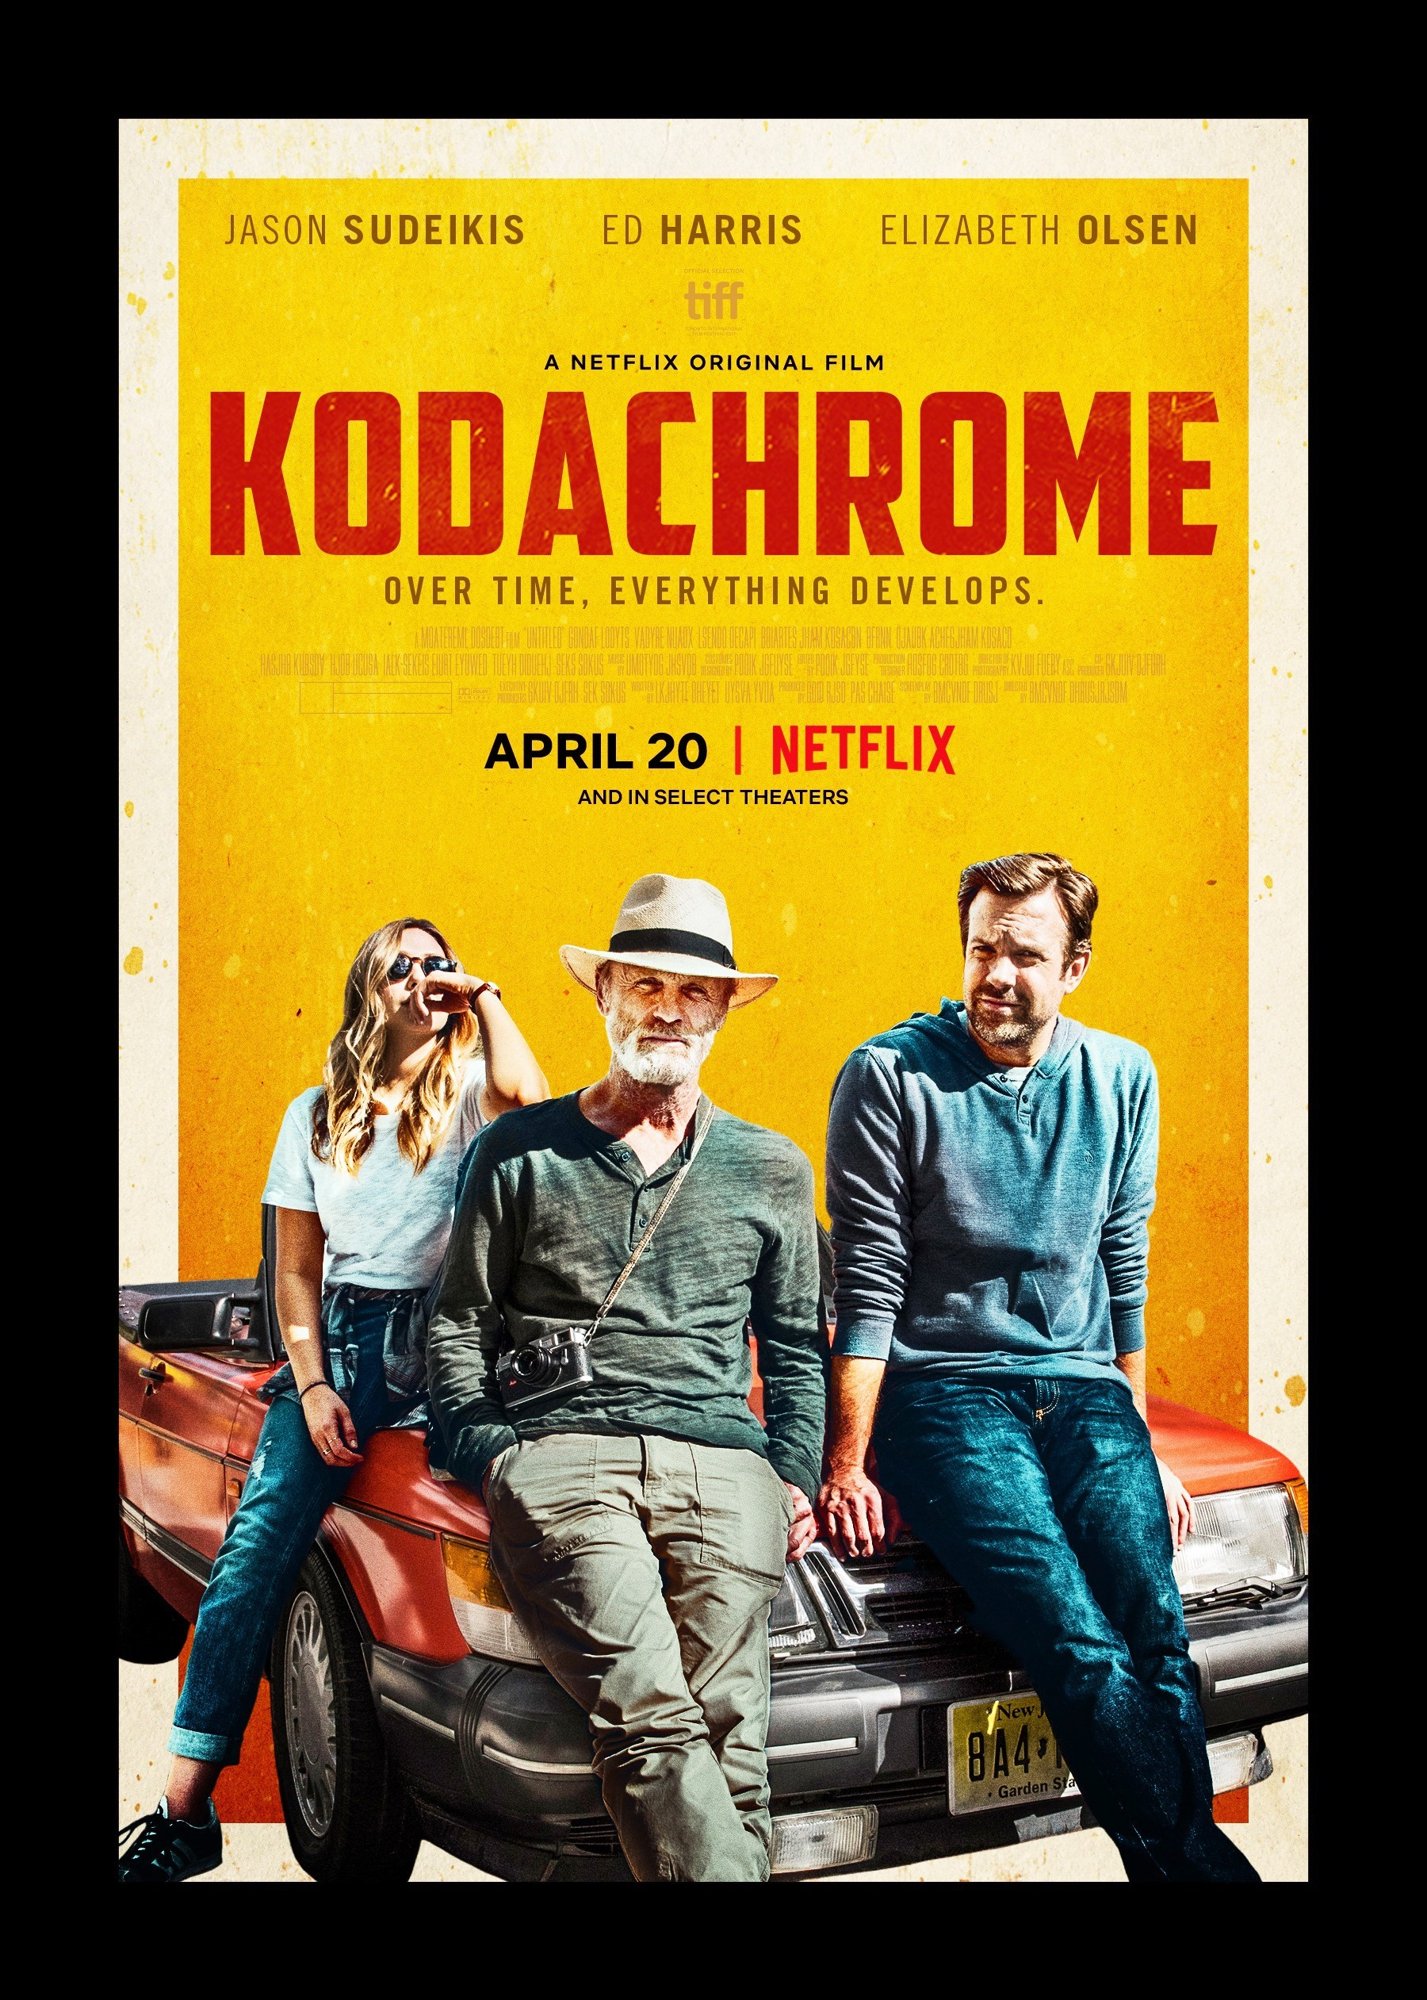 Poster of Netflix's Kodachrome (2018)